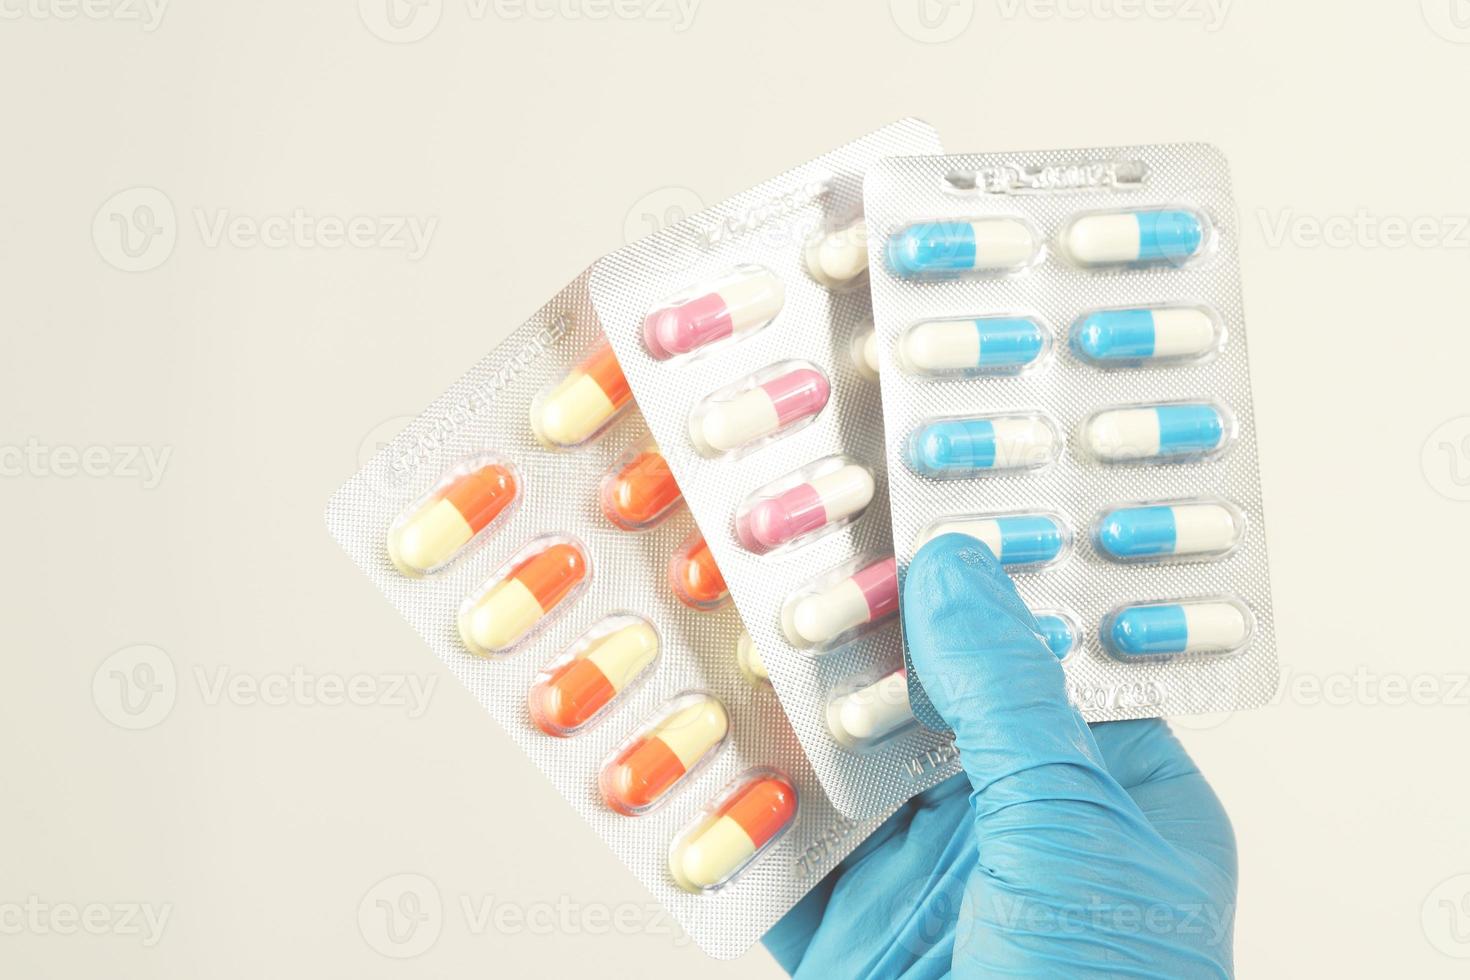 der Apotheker oder Arzt hält die Antibiotika-Kapseln und gibt sie dem Patienten oder der Person. übermäßiger Einsatz von Antibiotika antimikrobielle Resistenz weißer Hintergrund foto